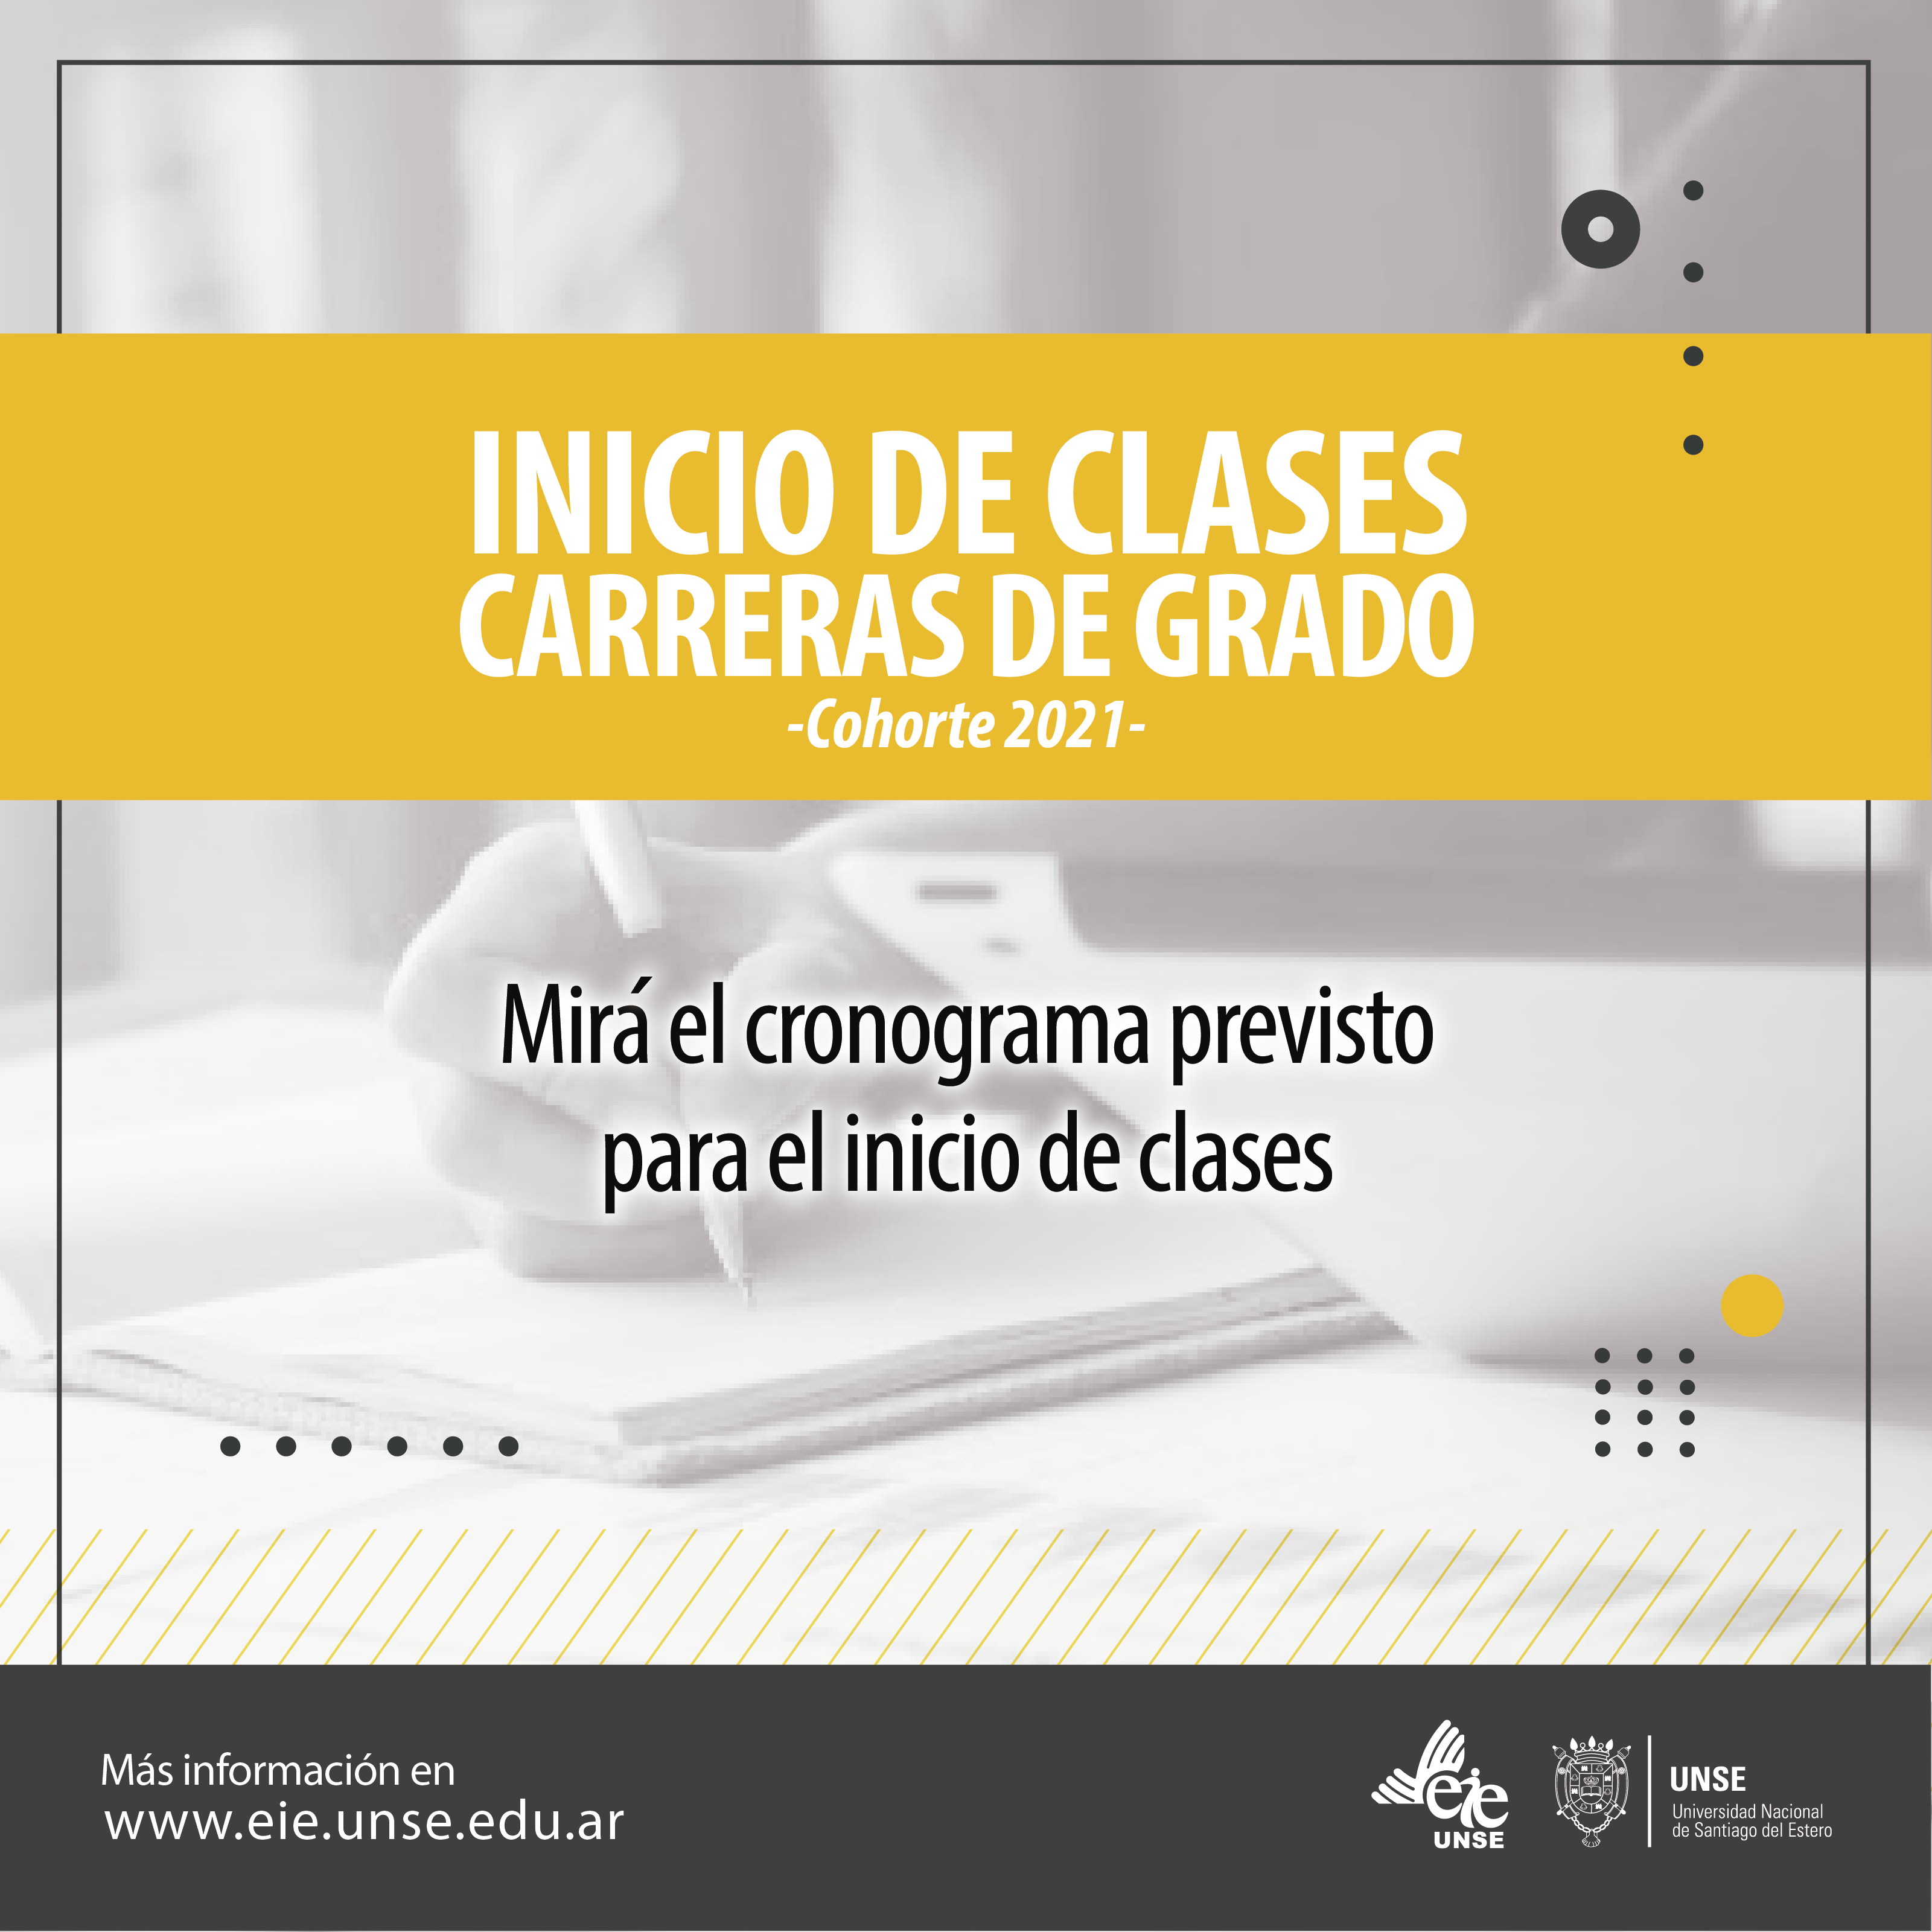 CRONOGRAMA DE INICIO DE CLASES DE LAS CARRERAS DE GRADO - COHORTE 2021